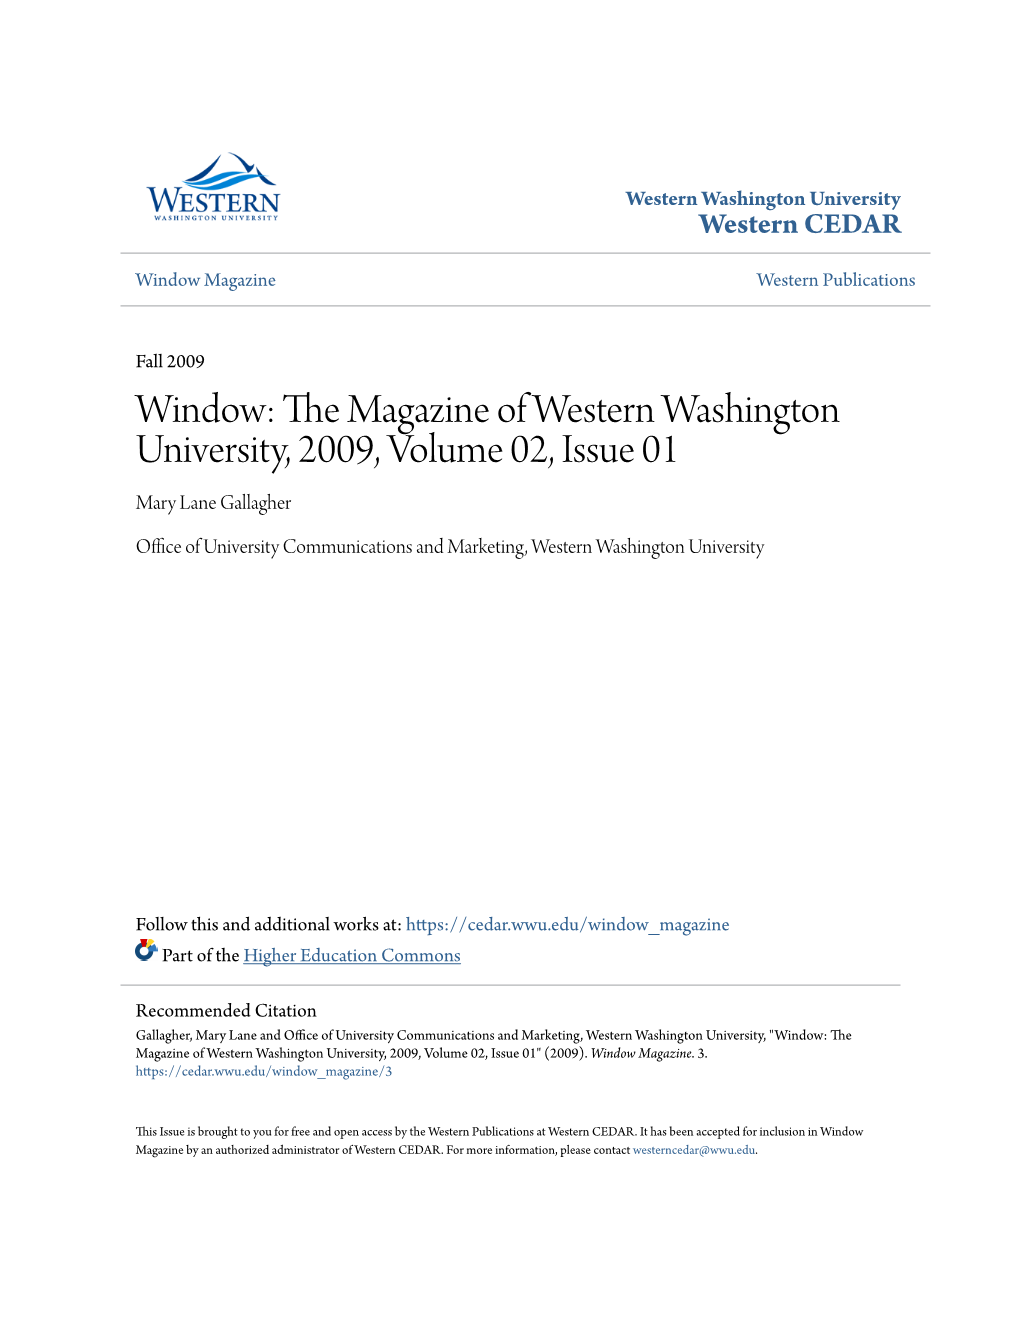 Window: the Magazine of Western Washington University, 2009, Volume 02, Issue 01" (2009)